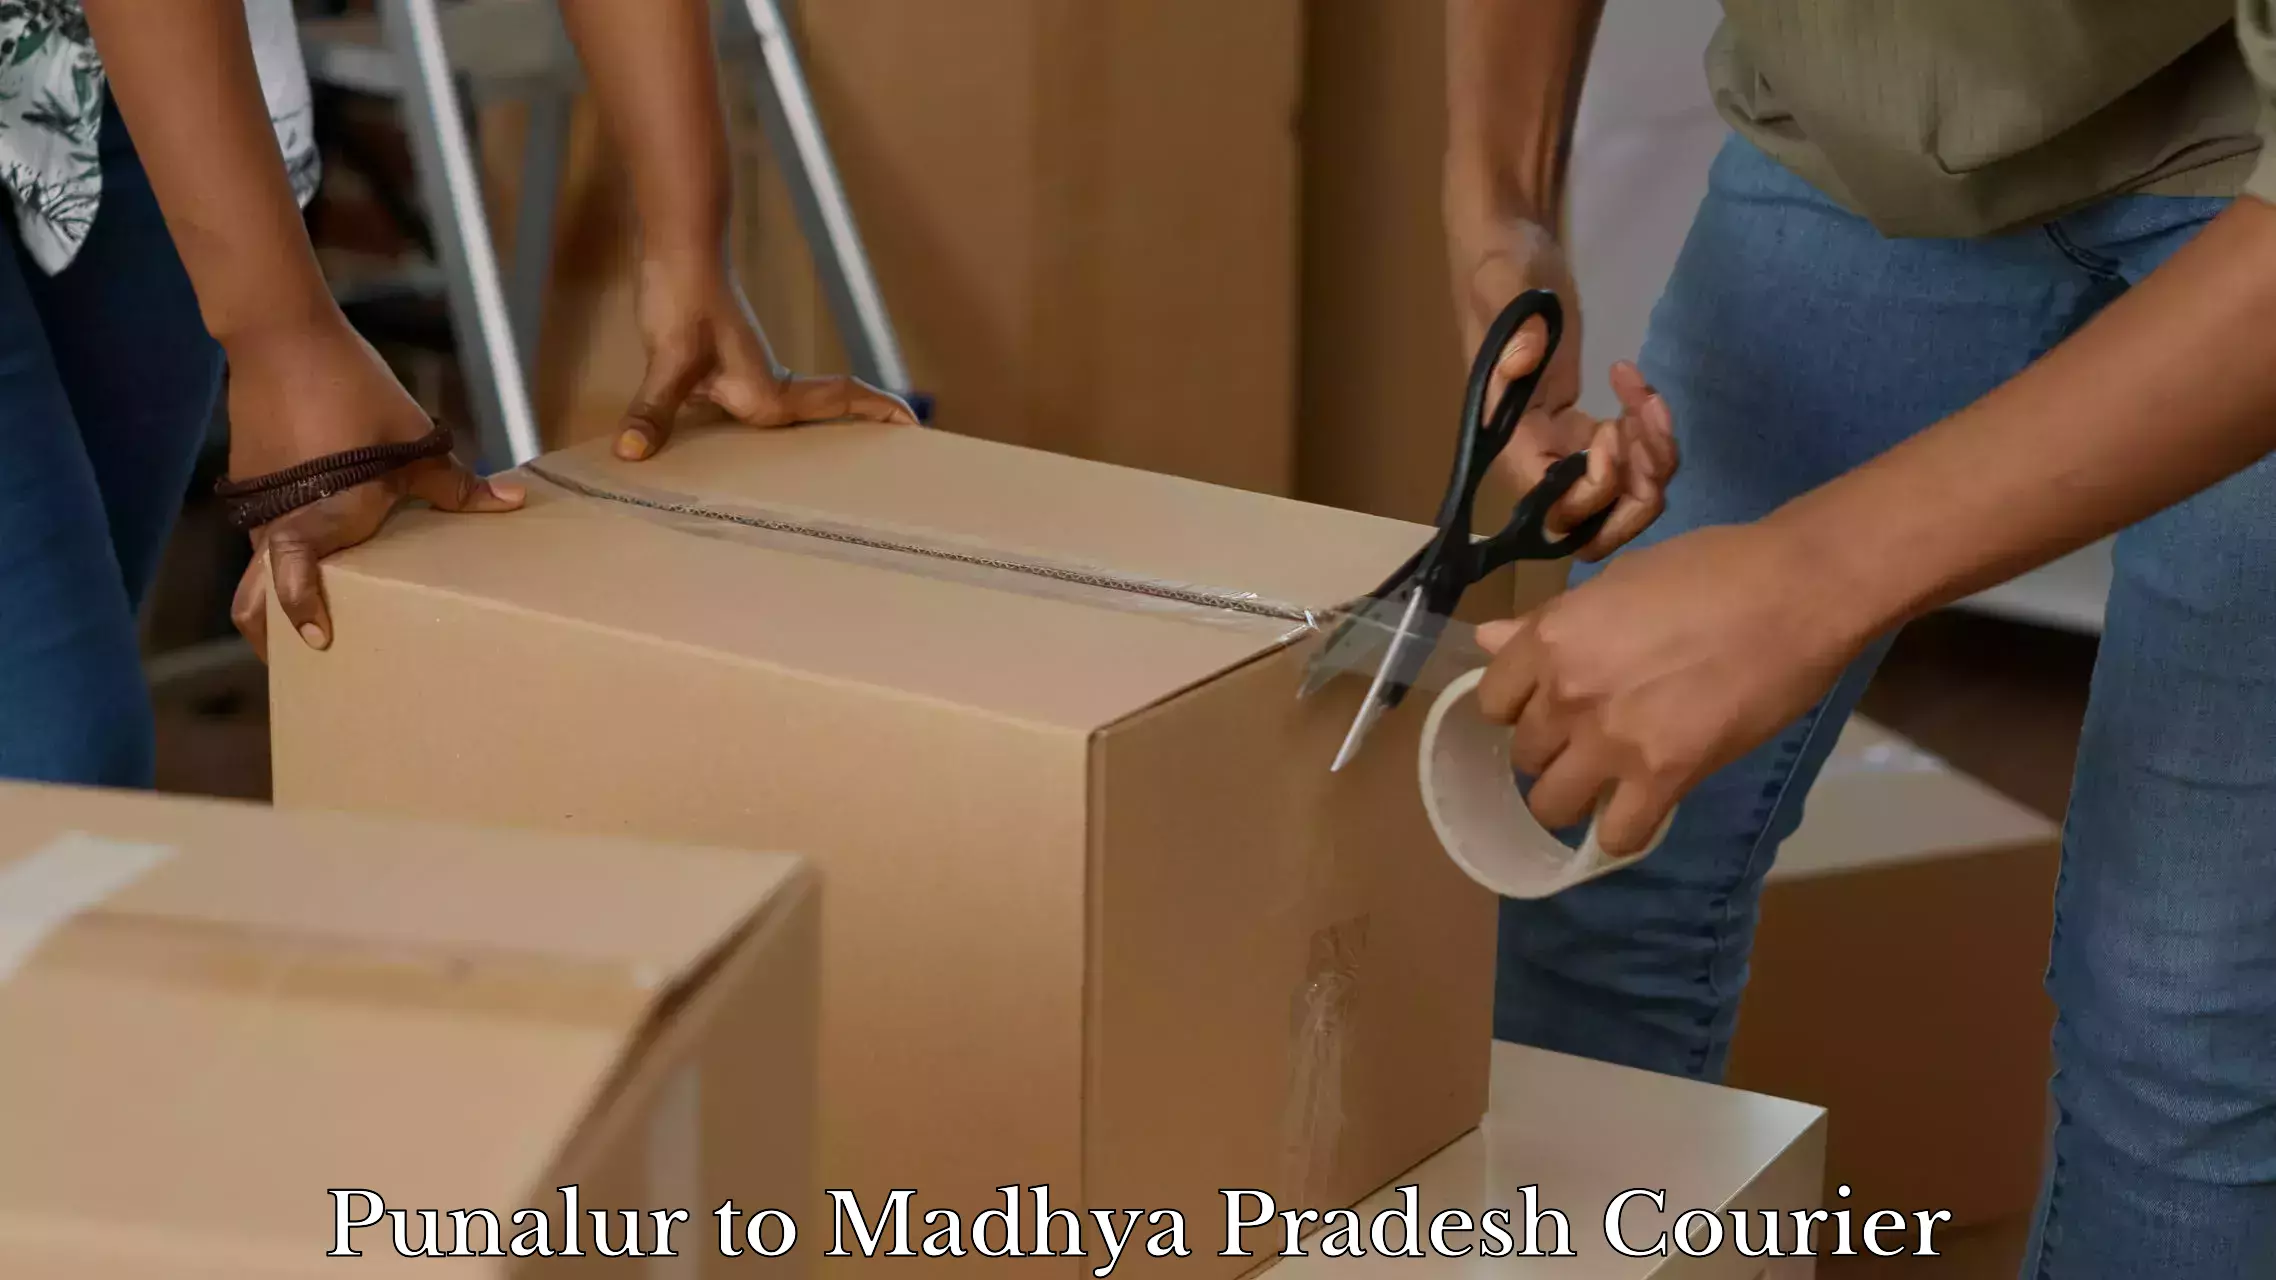 Baggage courier optimization Punalur to Madhya Pradesh